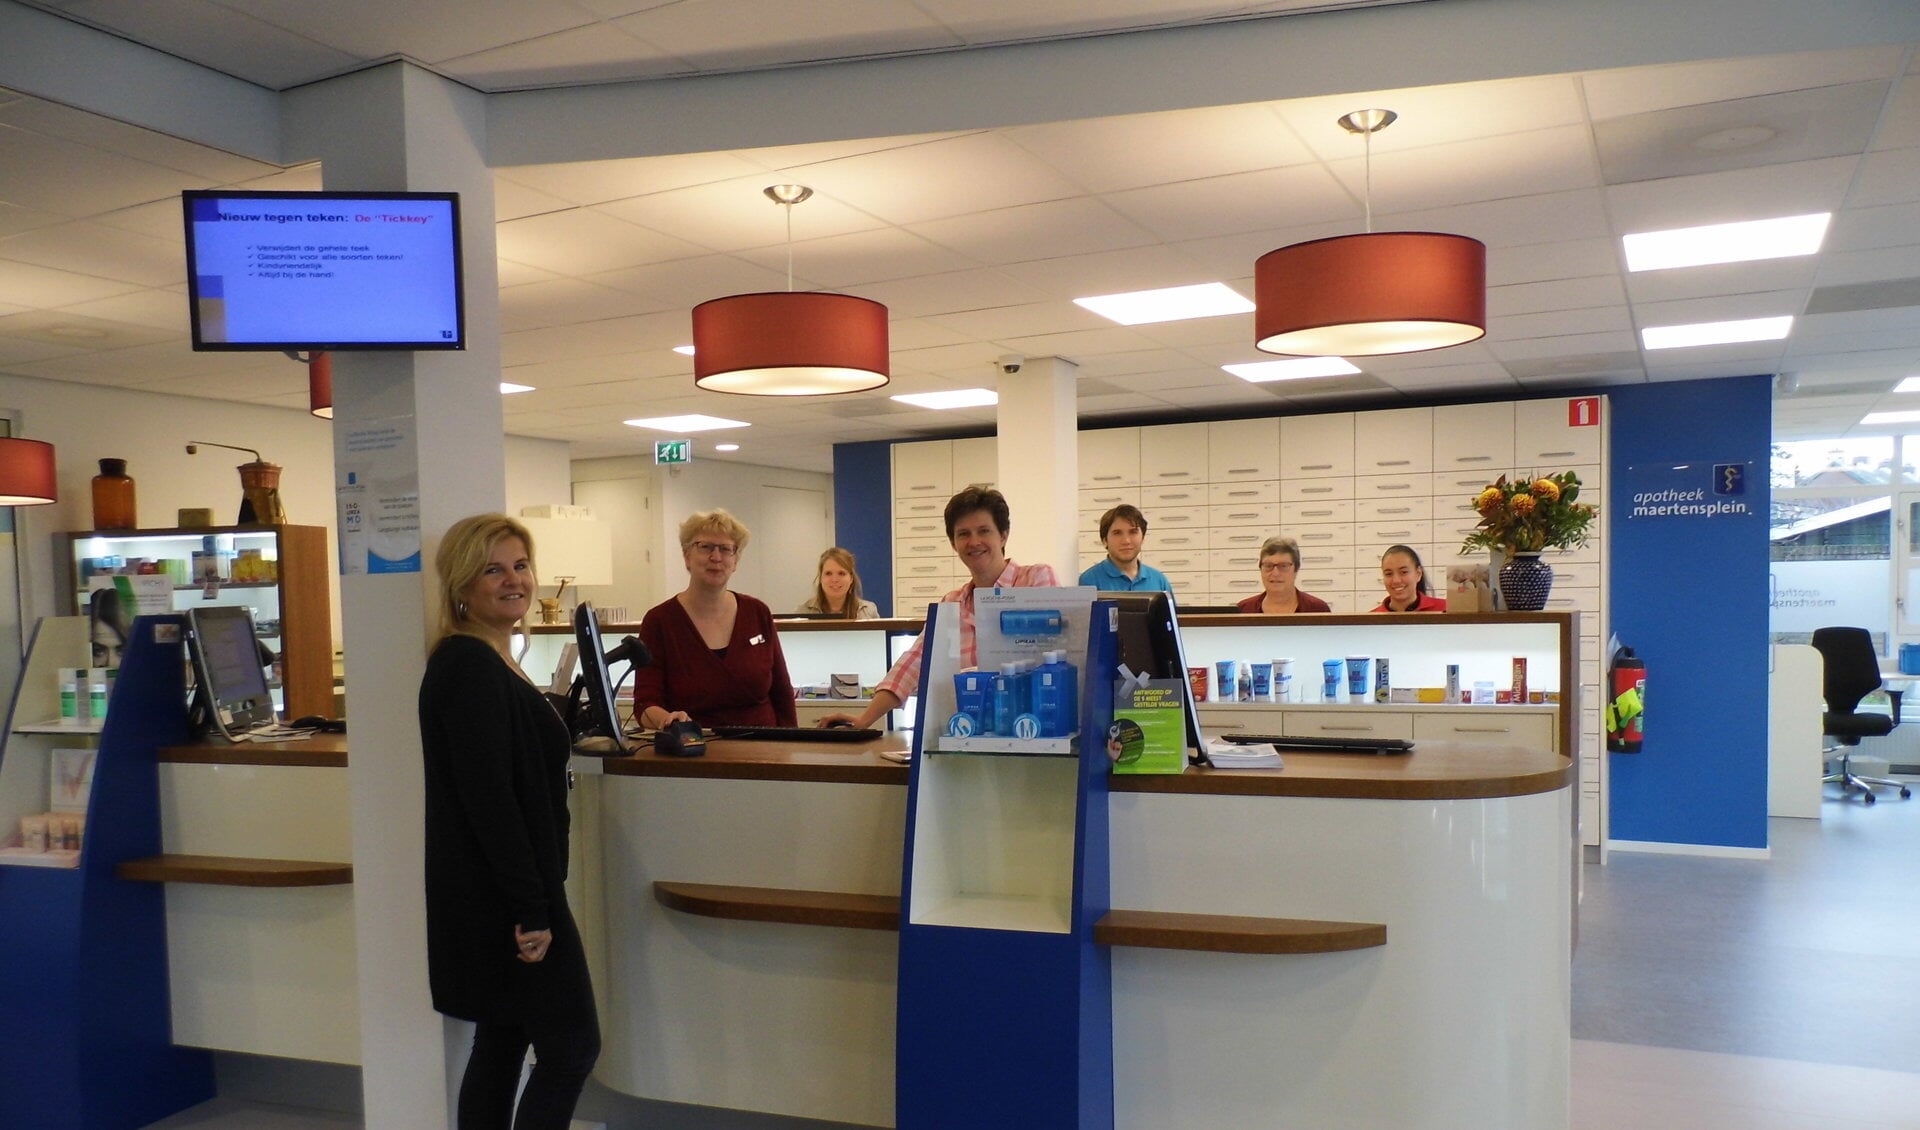 Mensen die hulp nodig hebben bij het zoeken naar een passende ziektekostenverzekering kunnen langskomen bij Apotheek Maertensplein.